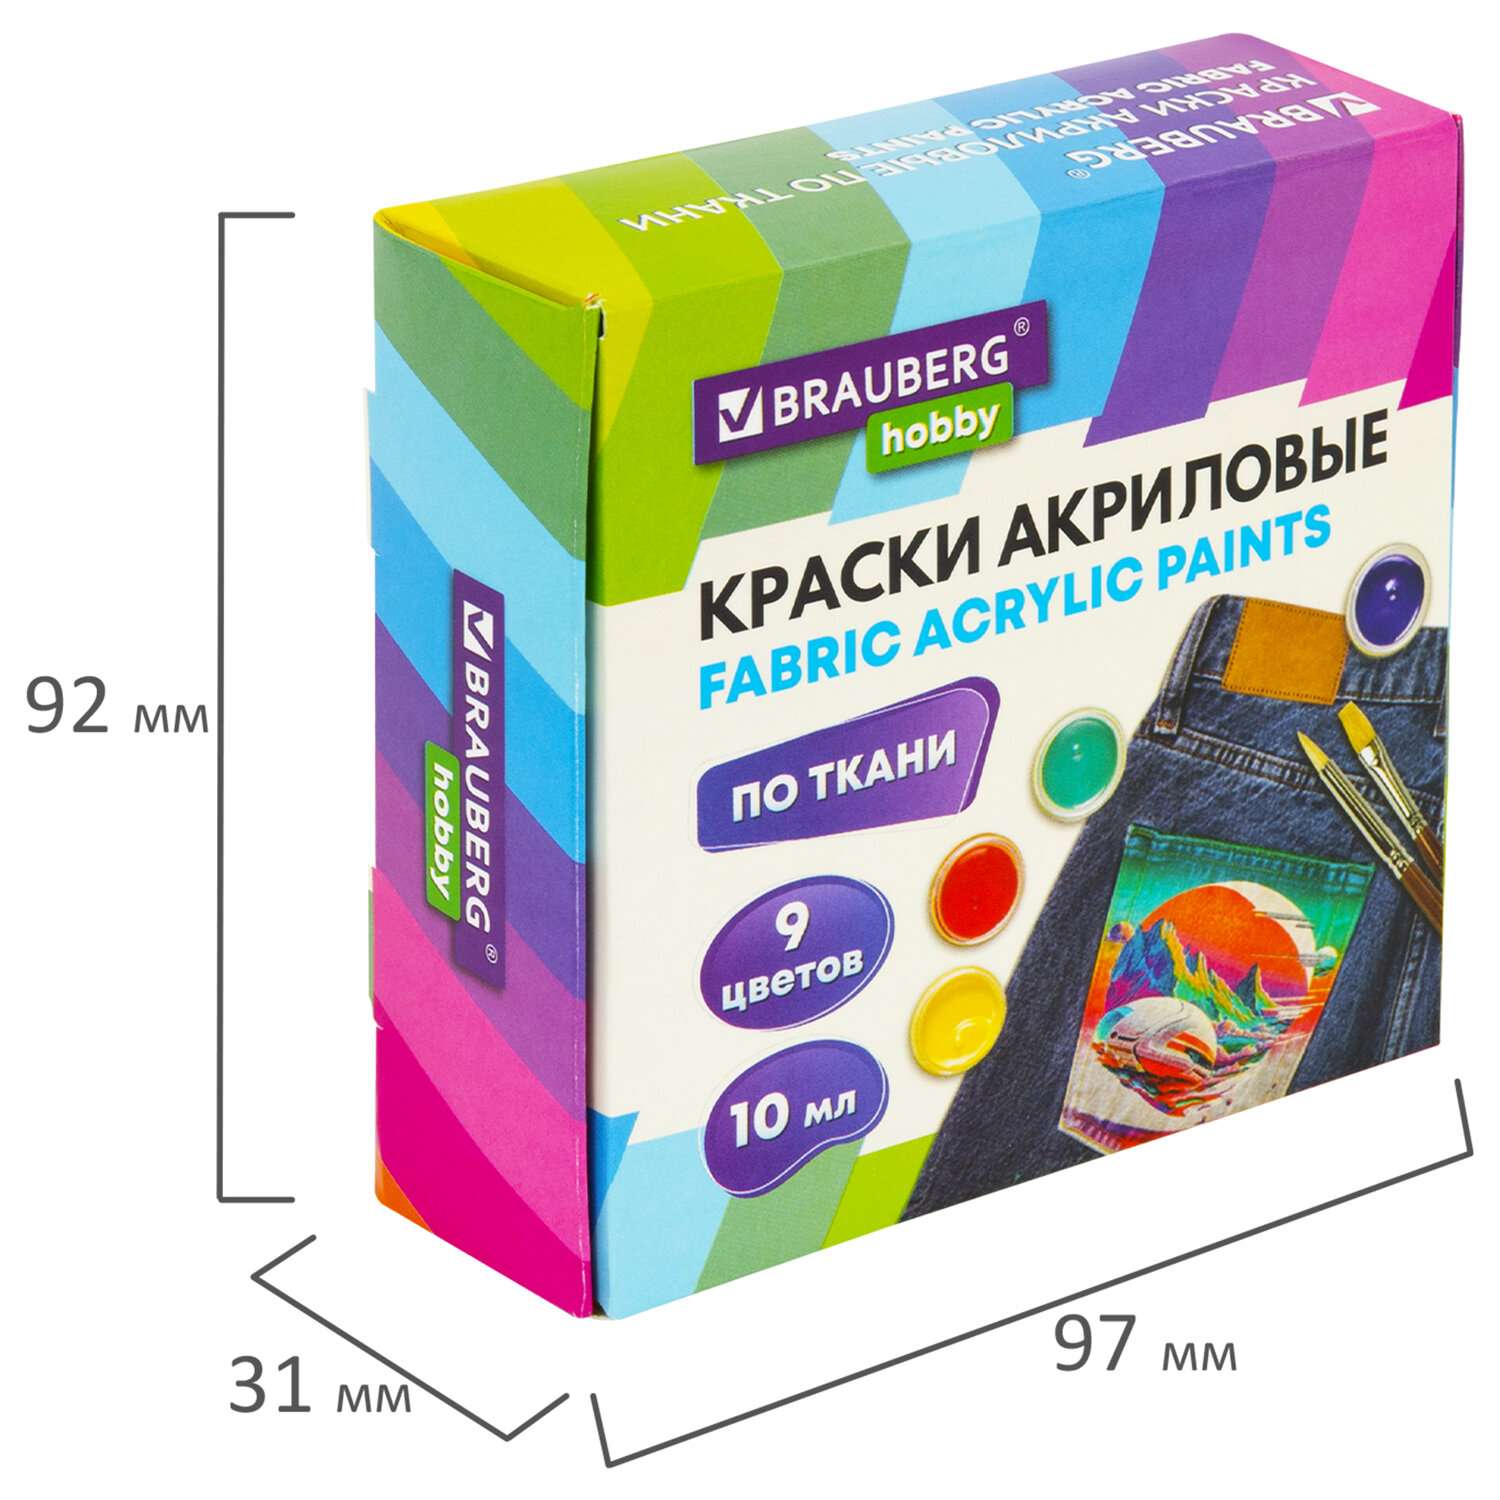 Акриловые краски Brauberg для ткани набор художественные 9 цветов - фото 6